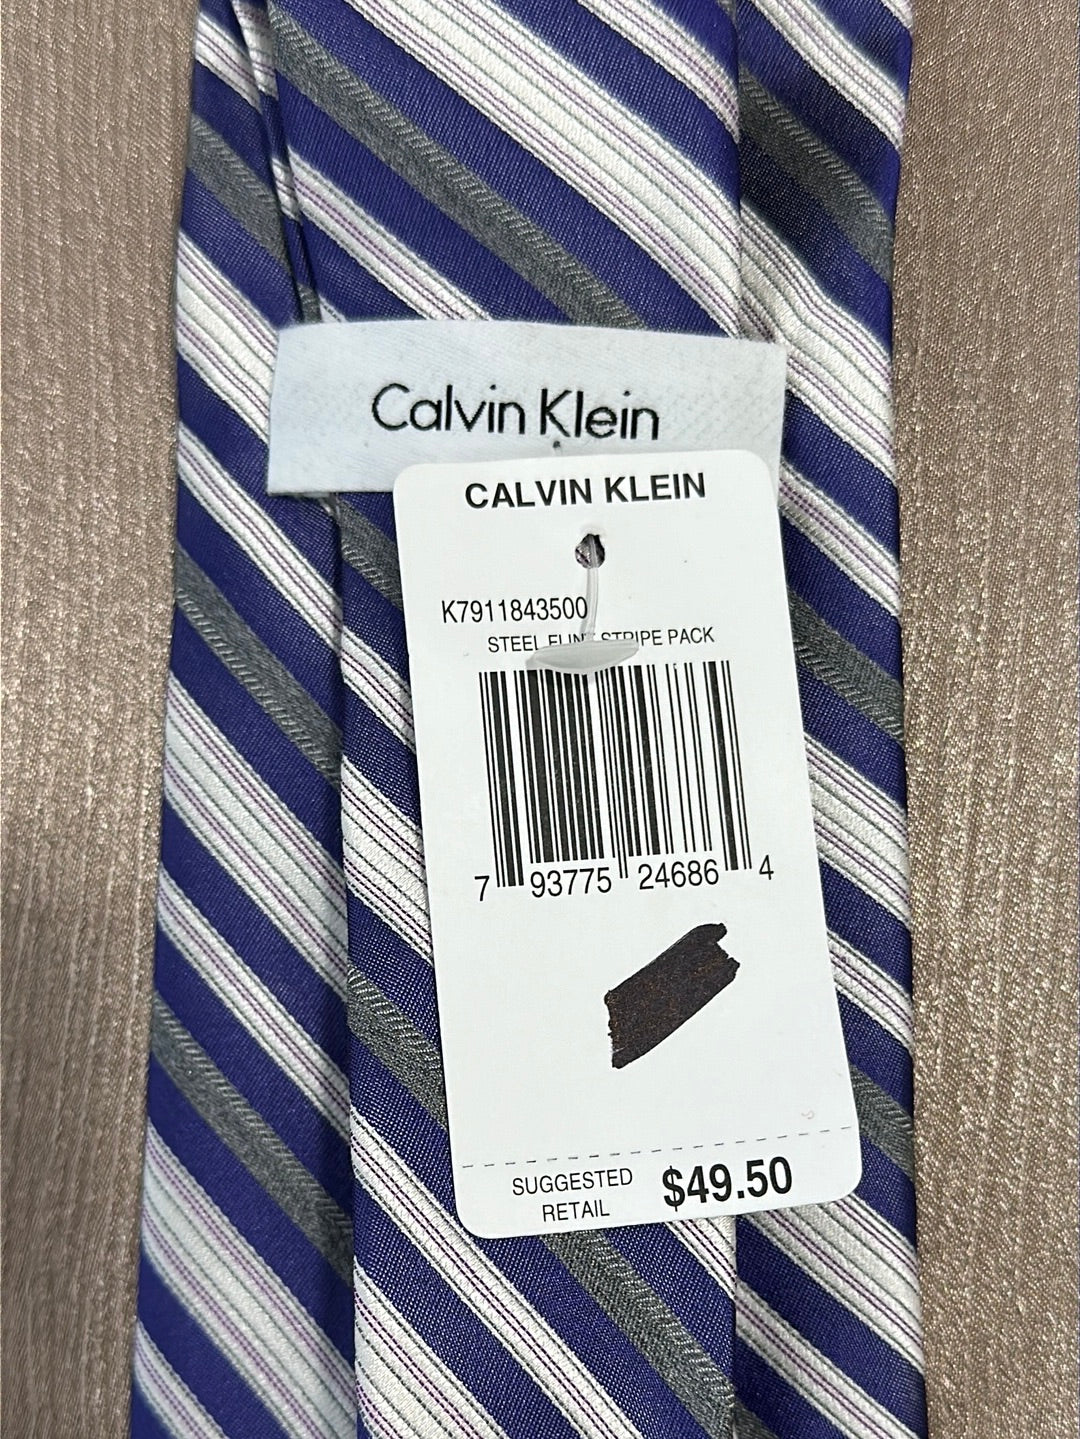 NWT - CALVIN KLEIN purple flint gray Stripe 100% Silk Necktie - 3.5" x 57"